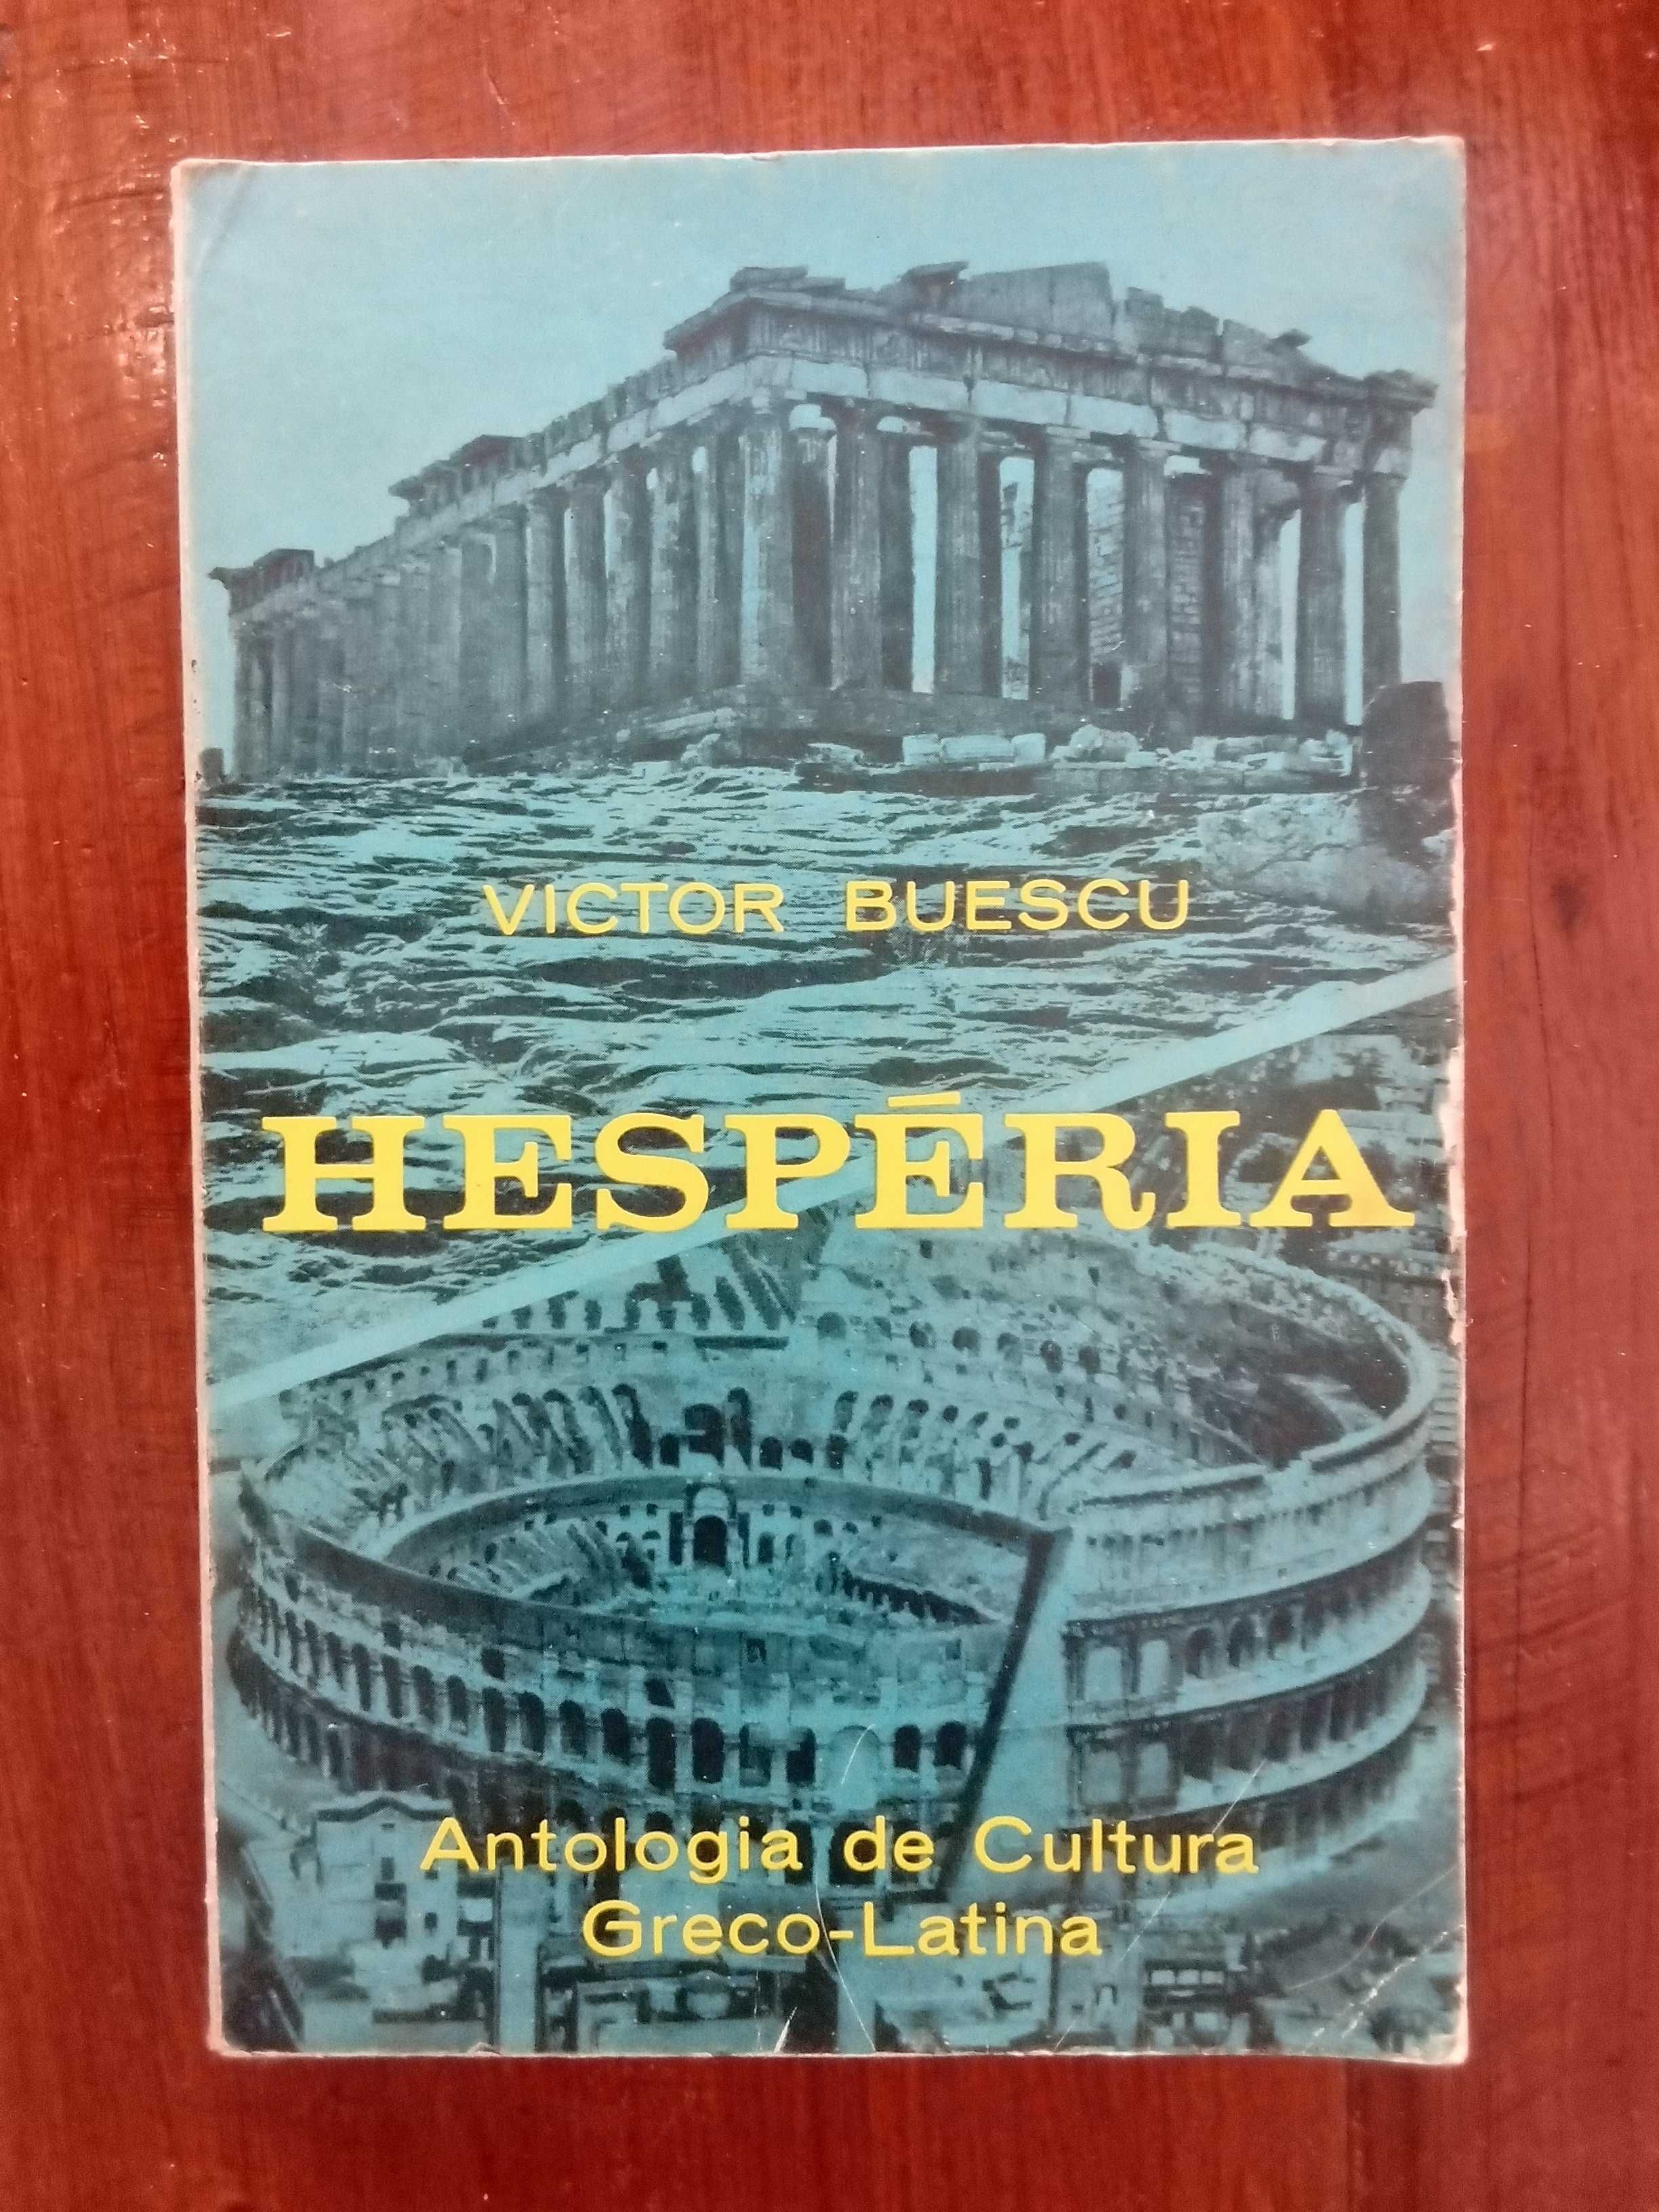 Victor Buescu - Hespéria